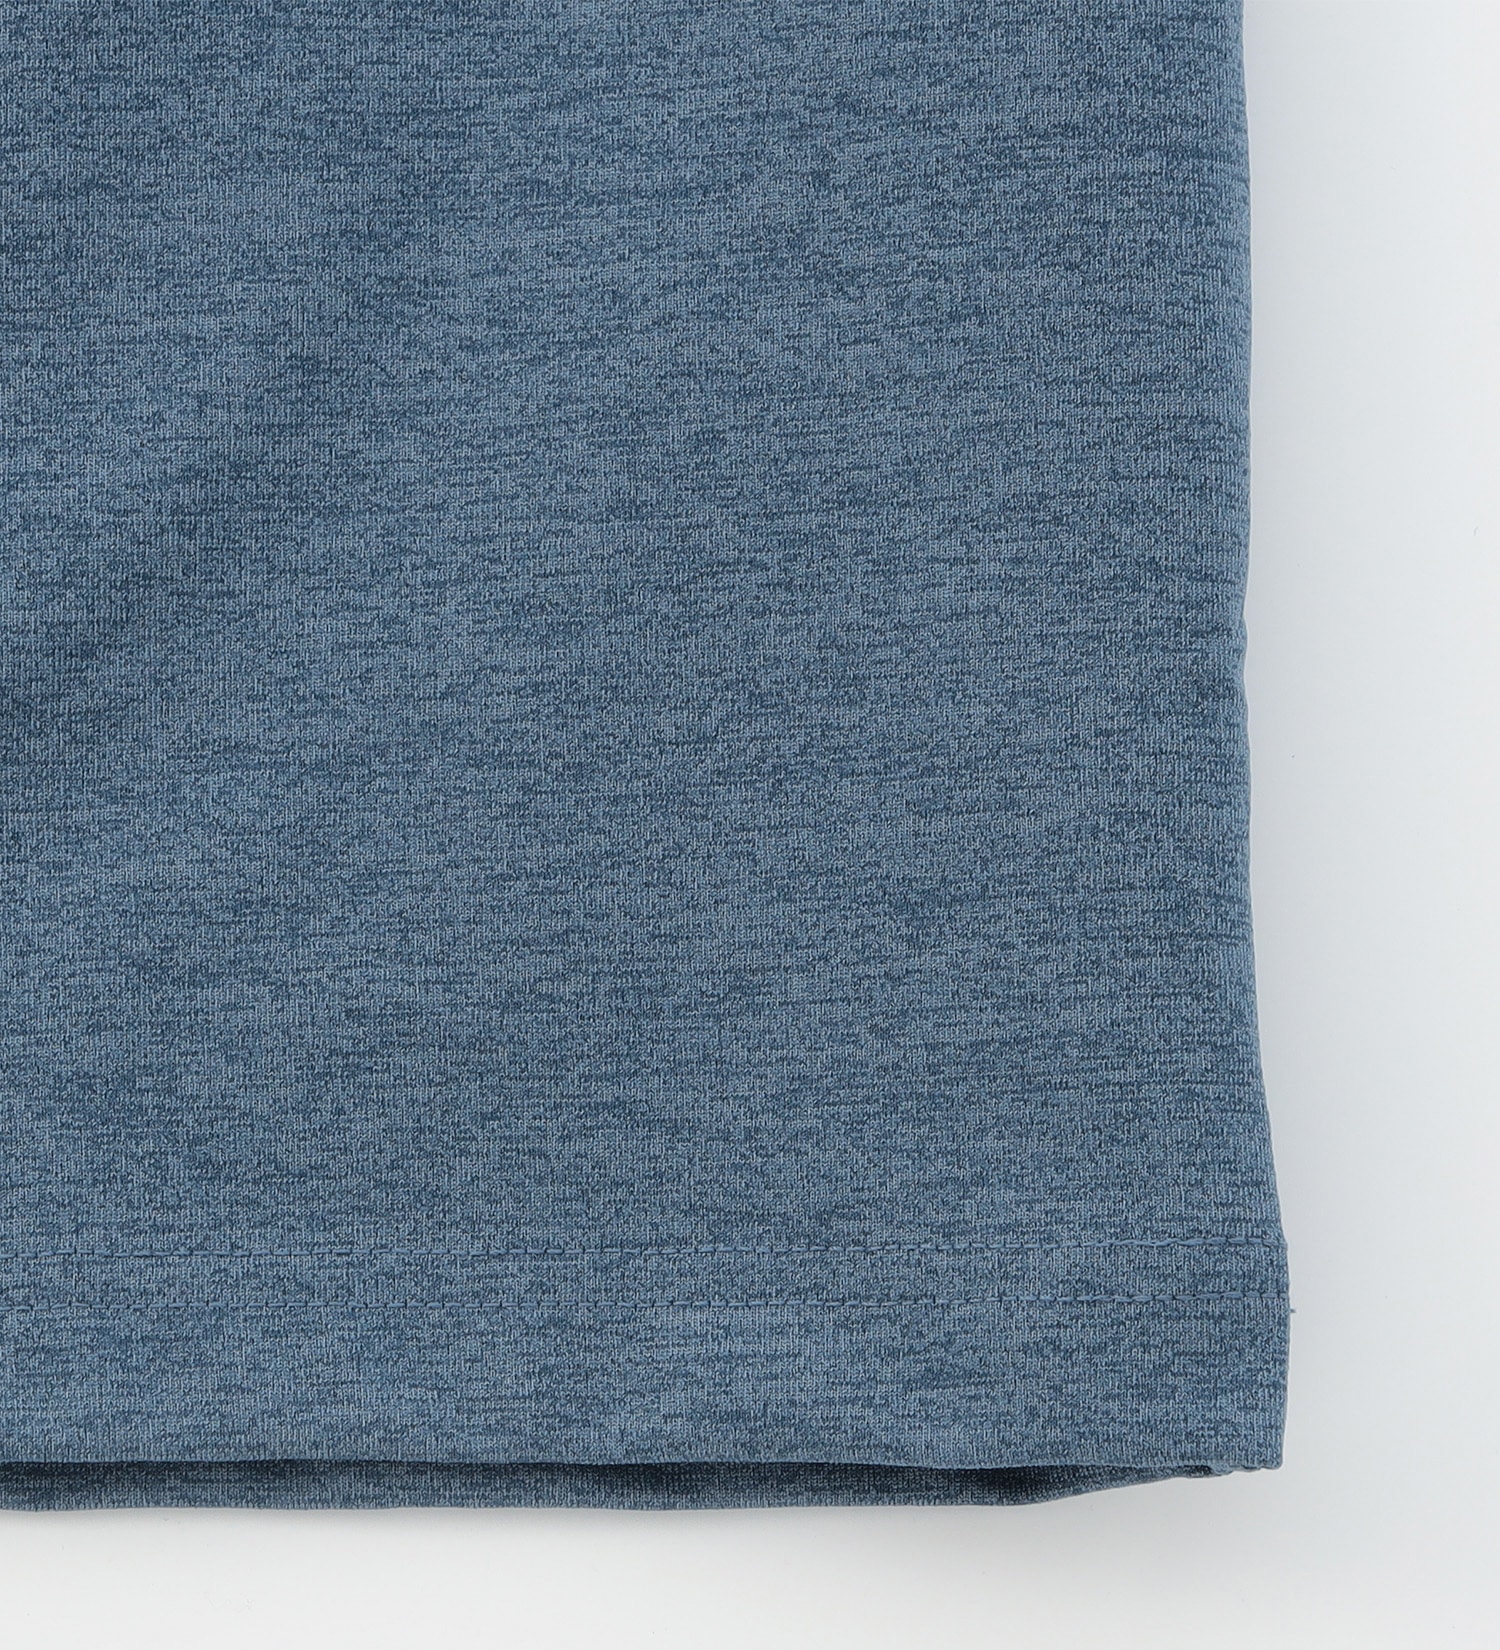 EDWIN(エドウイン)の【GW SALE】クルーネック ポケットTシャツ 半袖【アウトレット店舗・WEB限定】|トップス/Tシャツ/カットソー/メンズ|ブルー